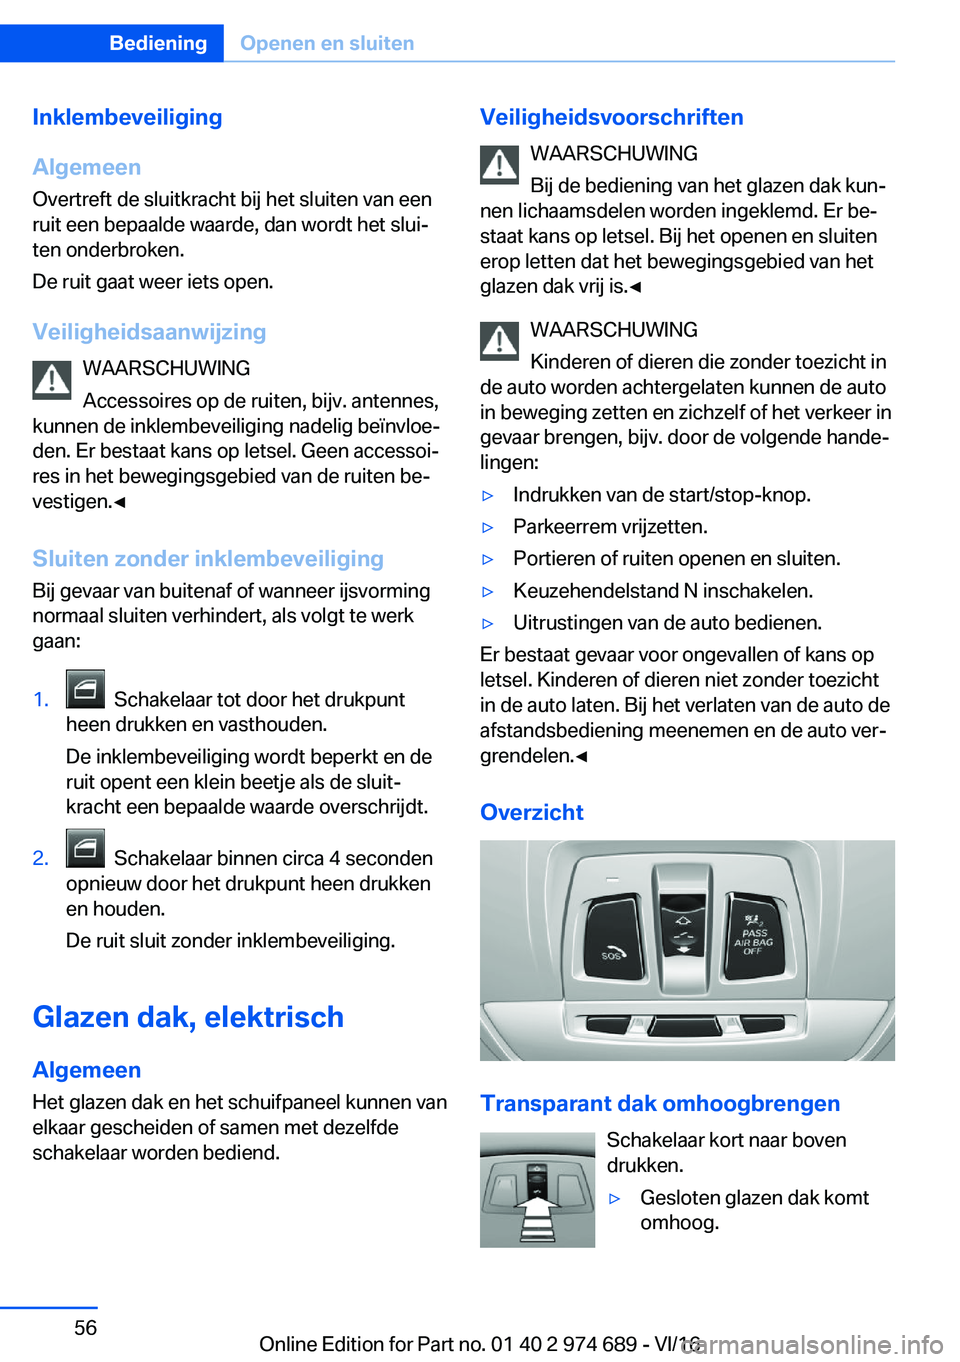 BMW M2 2017  Instructieboekjes (in Dutch) �I�n�k�l�e�m�b�e�v�e�i�l�i�g�i�n�g
�A�l�g�e�m�e�e�n
�O�v�e�r�t�r�e�f�t� �d�e� �s�l�u�i�t�k�r�a�c�h�t� �b�i�j� �h�e�t� �s�l�u�i�t�e�n� �v�a�n� �e�e�n
�r�u�i�t� �e�e�n� �b�e�p�a�a�l�d�e� �w�a�a�r�d�e�,�